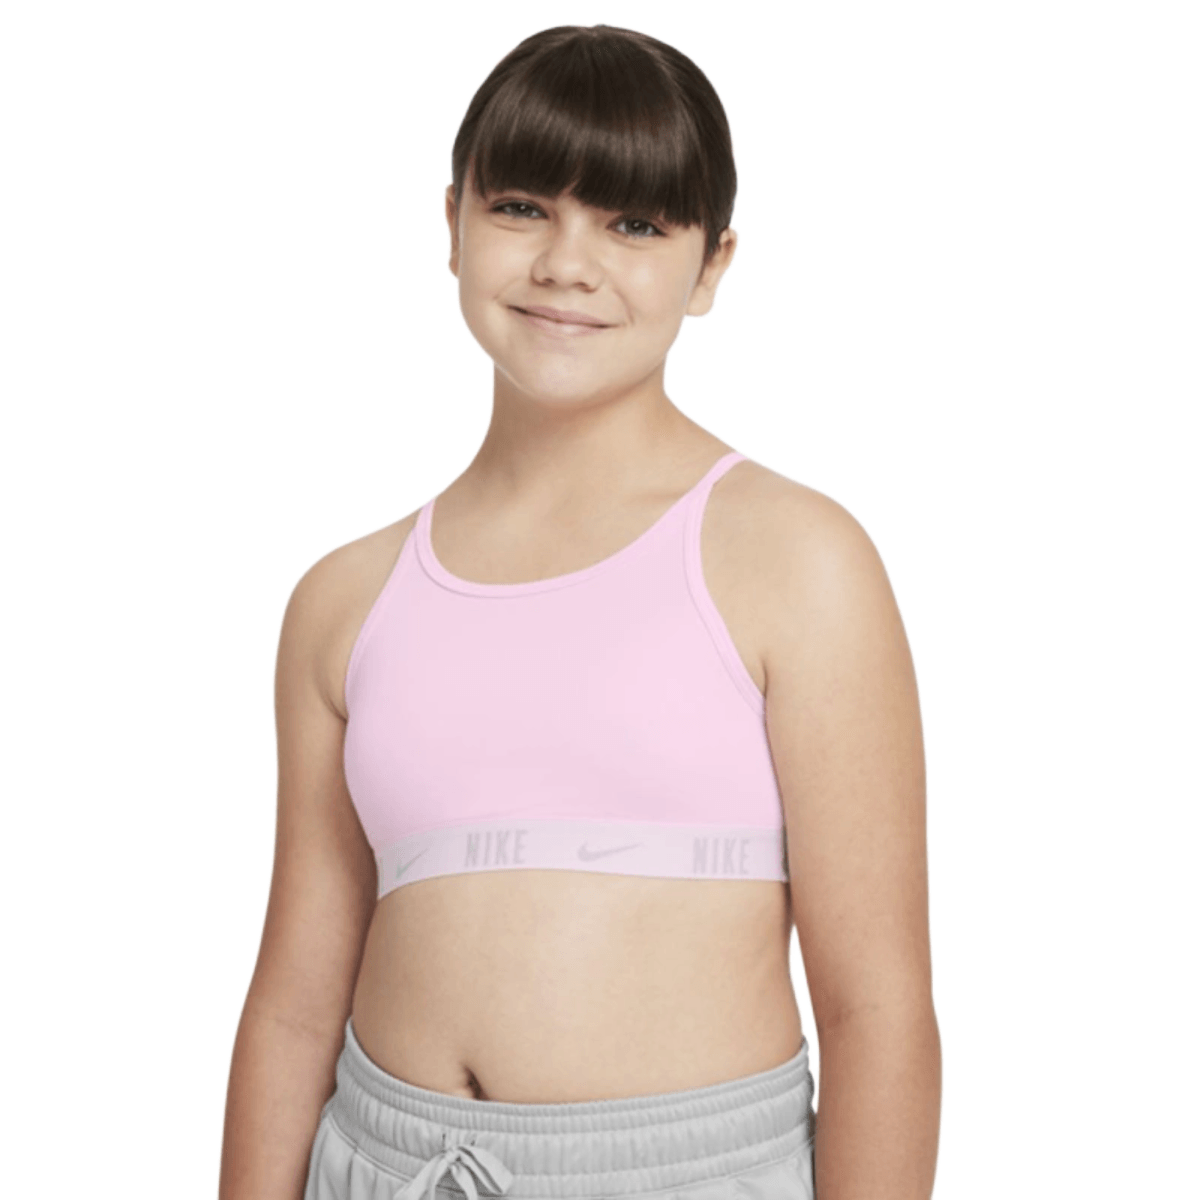 Nike: Girls' Trophy Bra - Size XL, Girl's